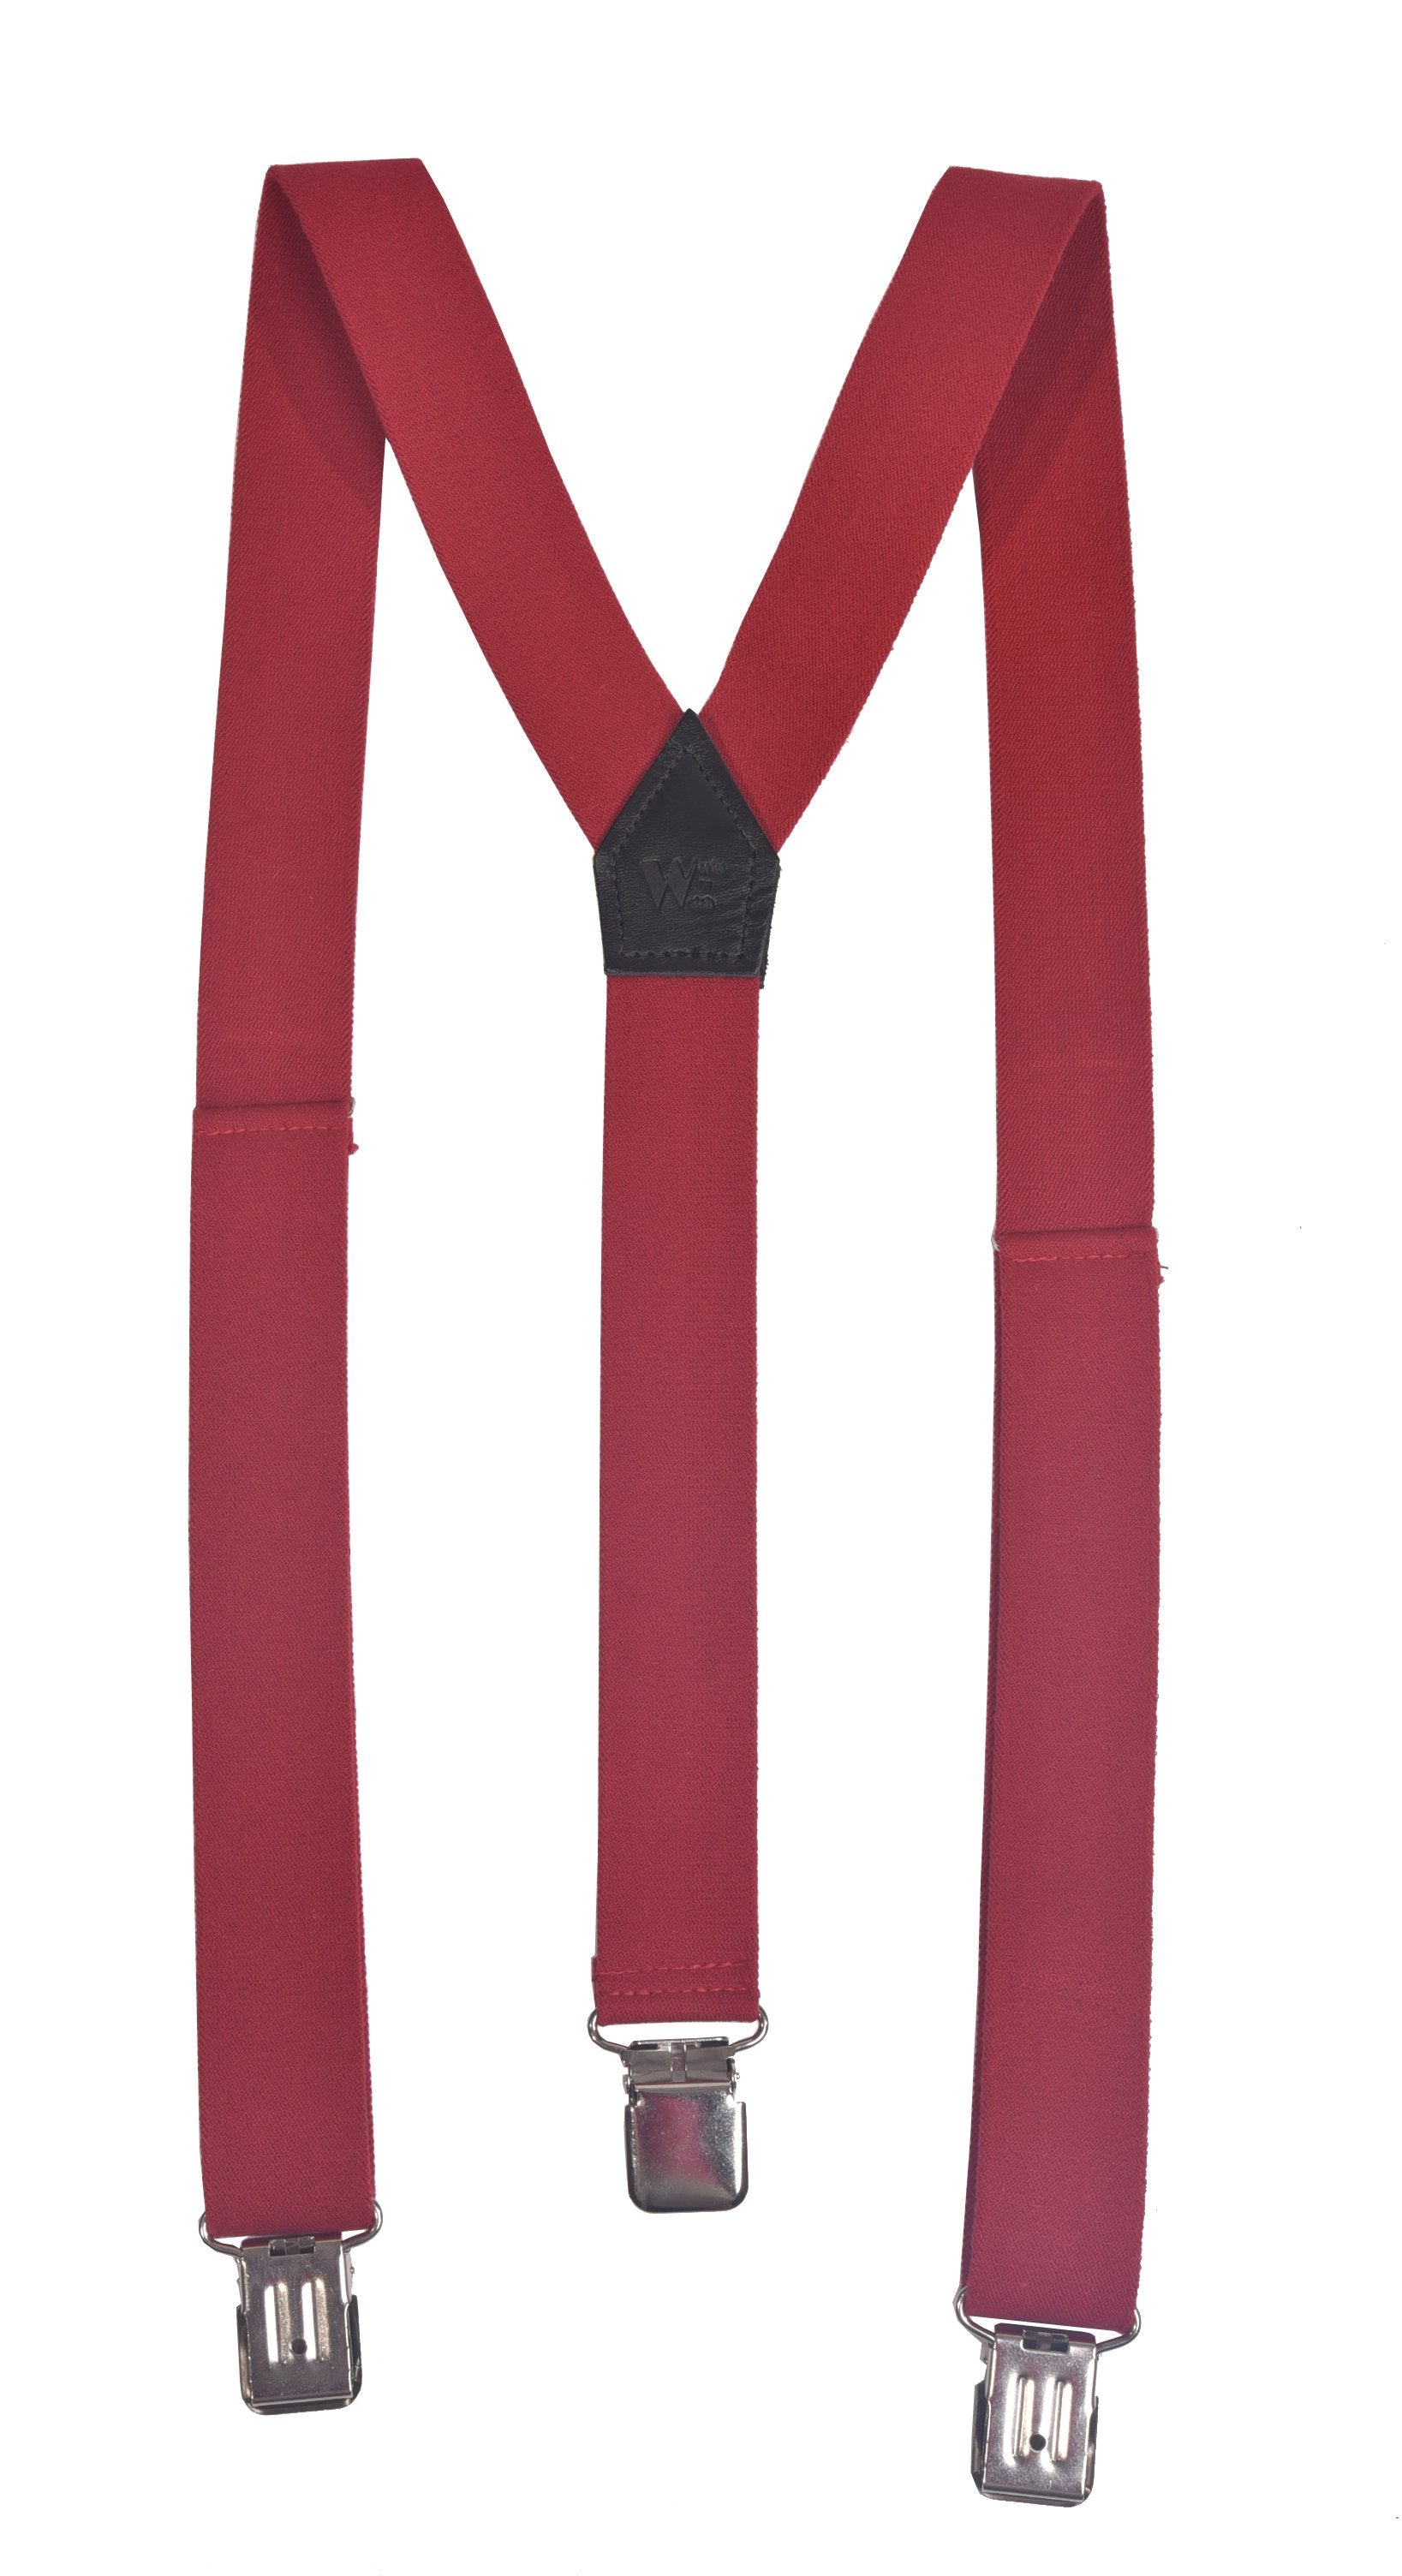  Carhartt Men's Utility Suspender, Elastic Button Clasp